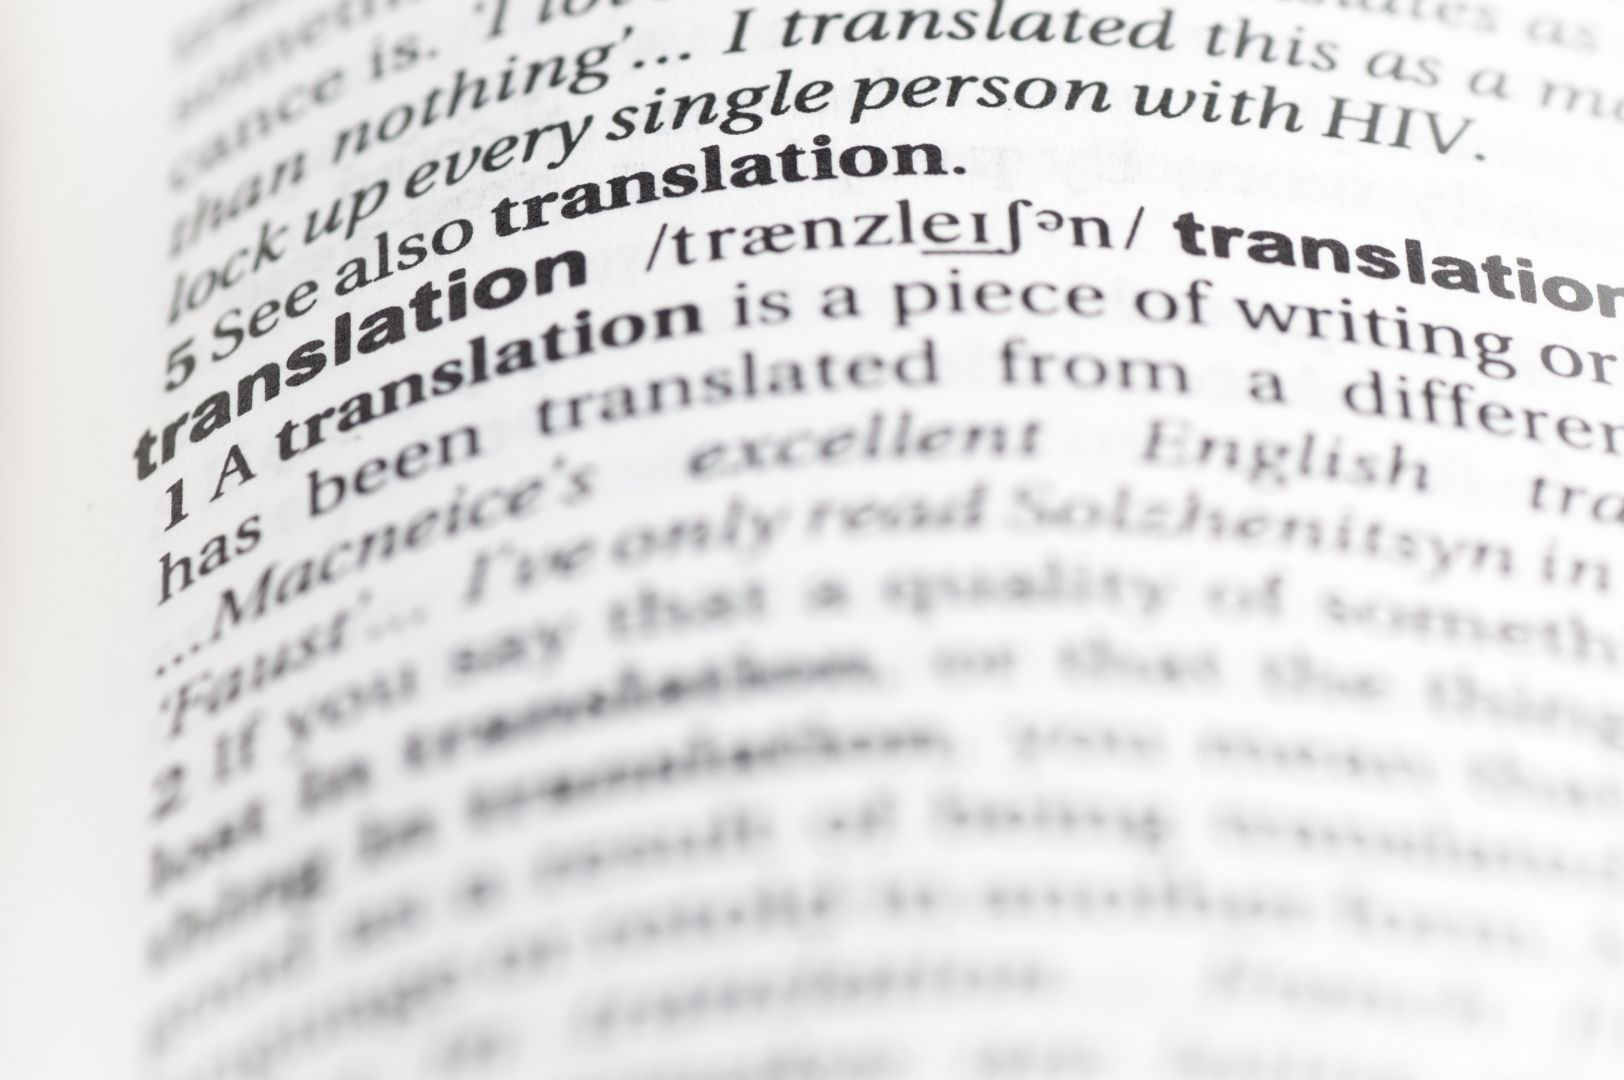 Poptávka na překlad návodu z AJ do ČJ (Překladatelské služby) - Karviná